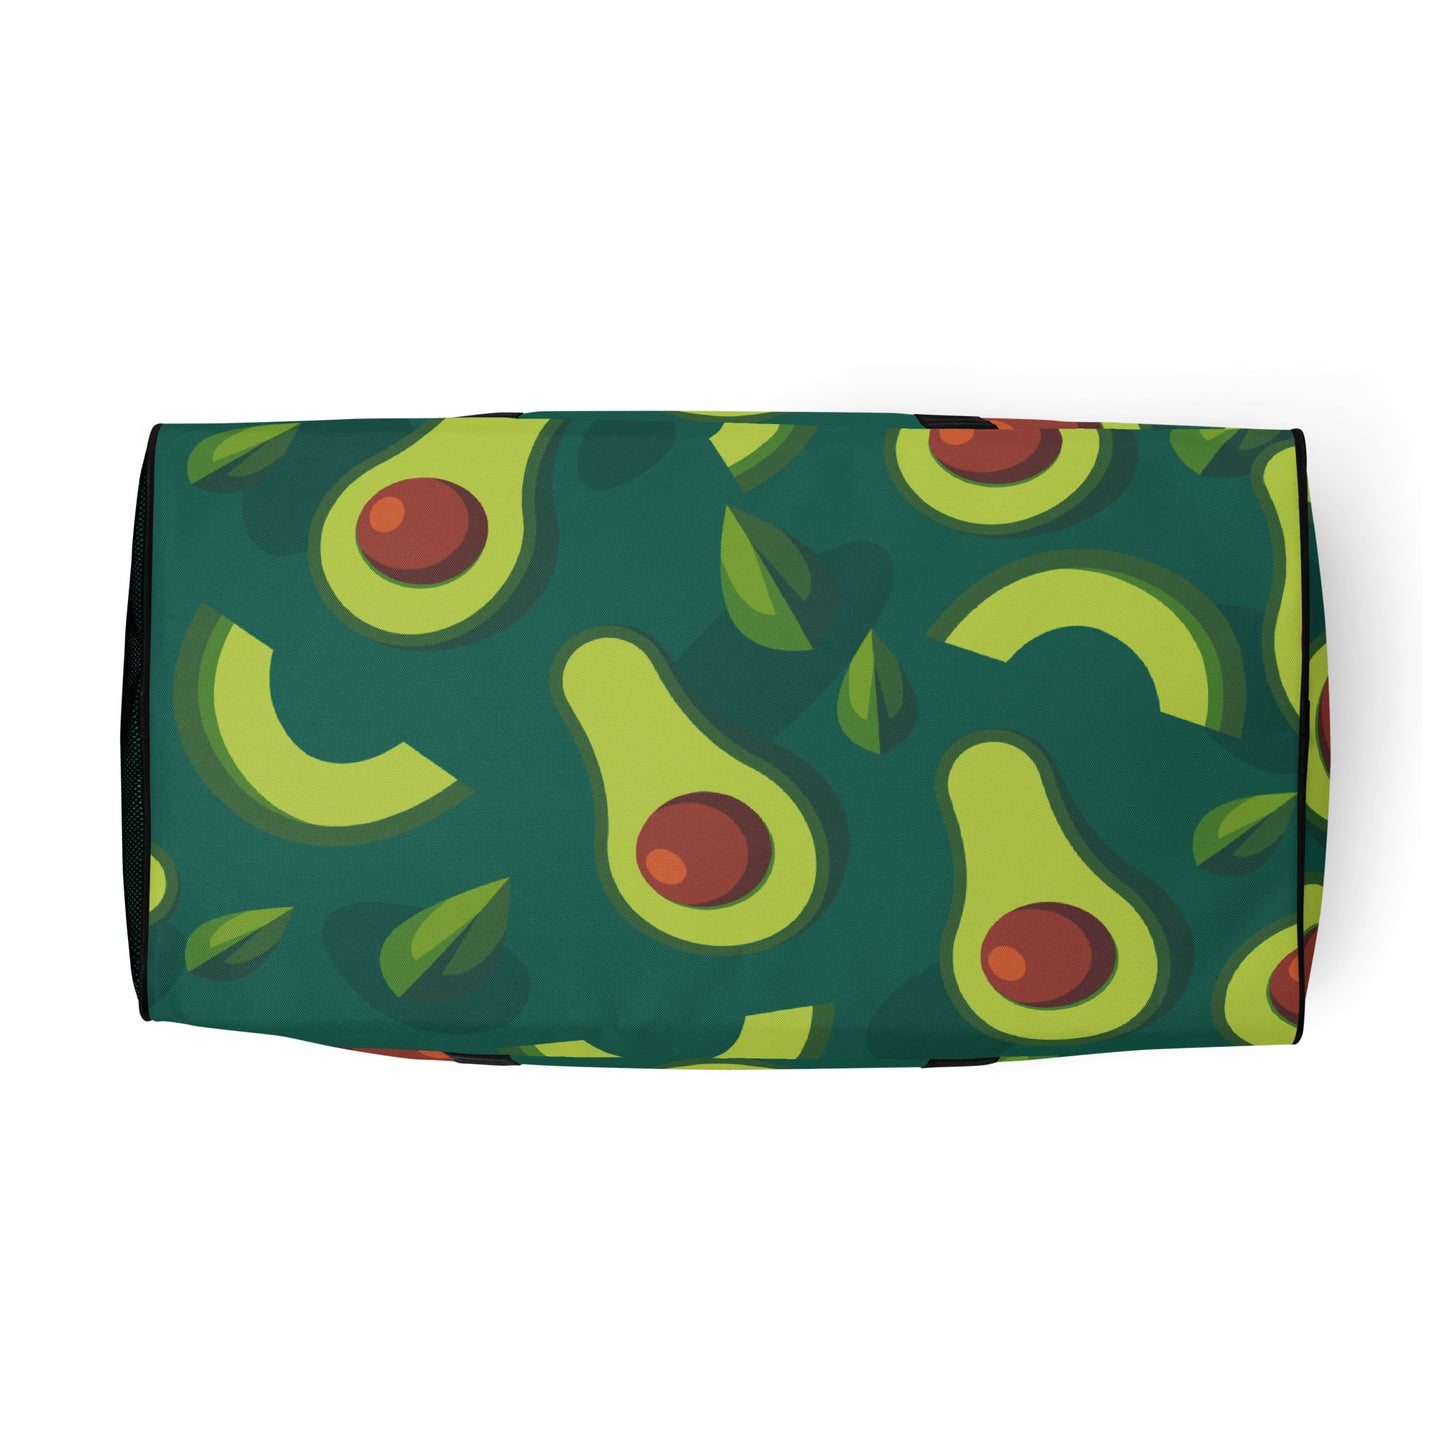 Avocado - Sustainably Made Duffle Bag